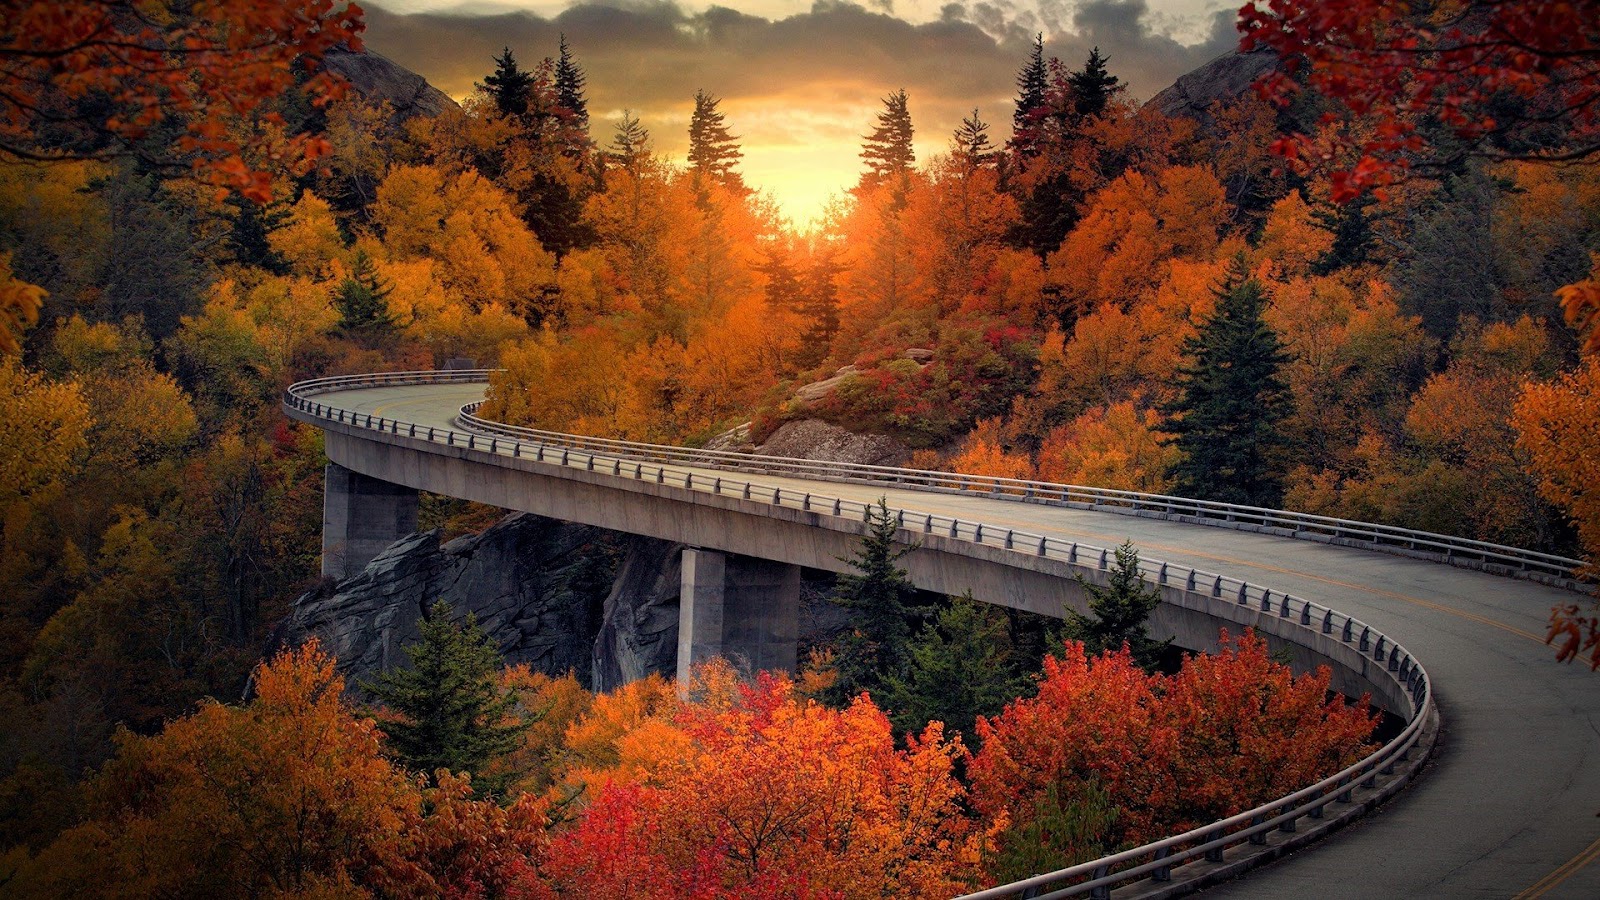 Top 50 hình ảnh những con đường đẹp nhất trên thế giới - Ảnh nền máy tính miêu tả hình ảnh cây cầu đẹp lung linh - viettelinternet24h.com